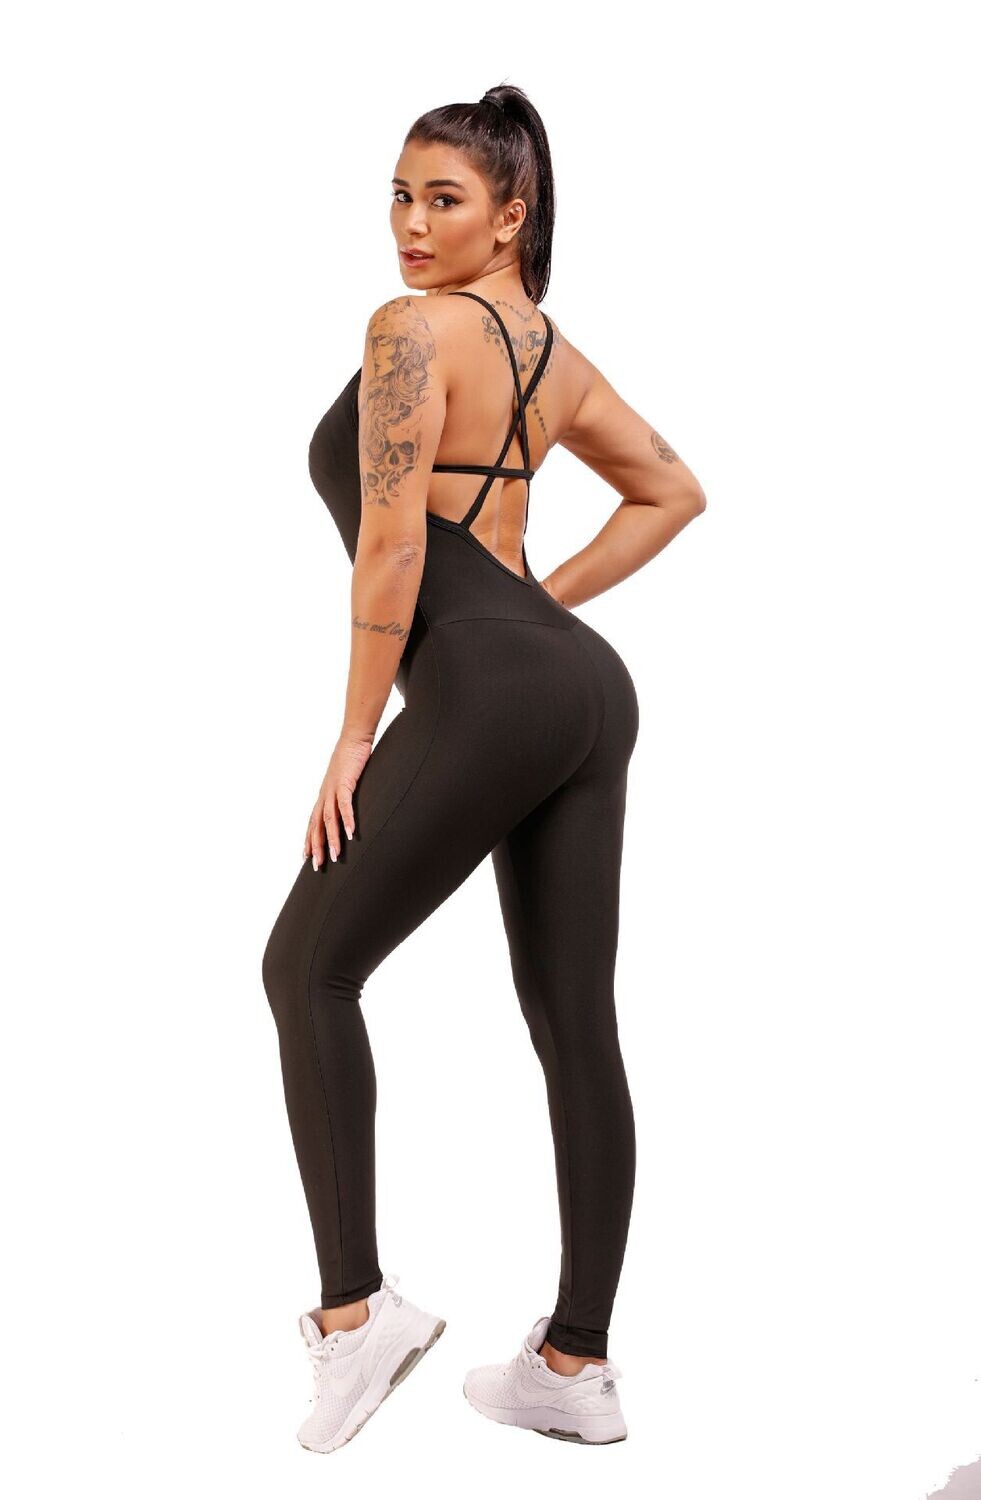 Solid Color Jumpsuit Stitching Yoga Pants Sports Fitness Women, Size: S, Color: Black jumpsuit